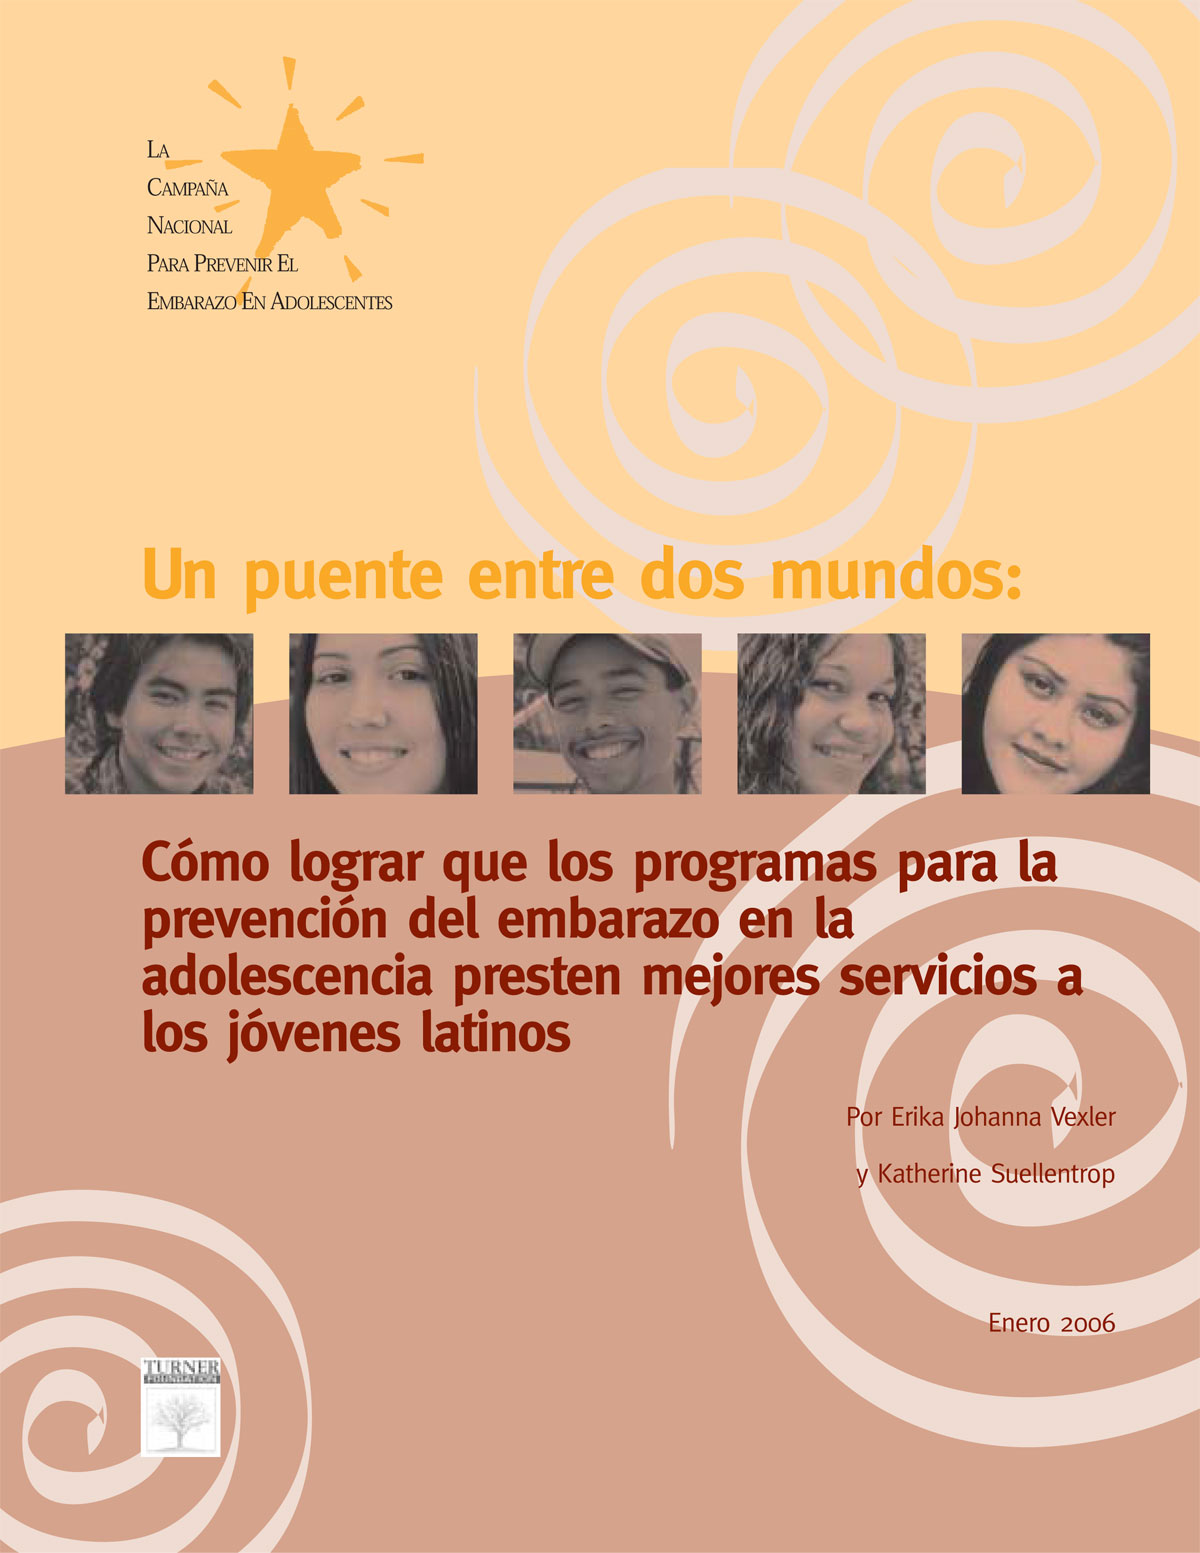 Un puente entre dos mundos: Cómo lograr que los programas para la prevención del embarazo en la adolescencia presten mejores servicios a los jóvenes latinos